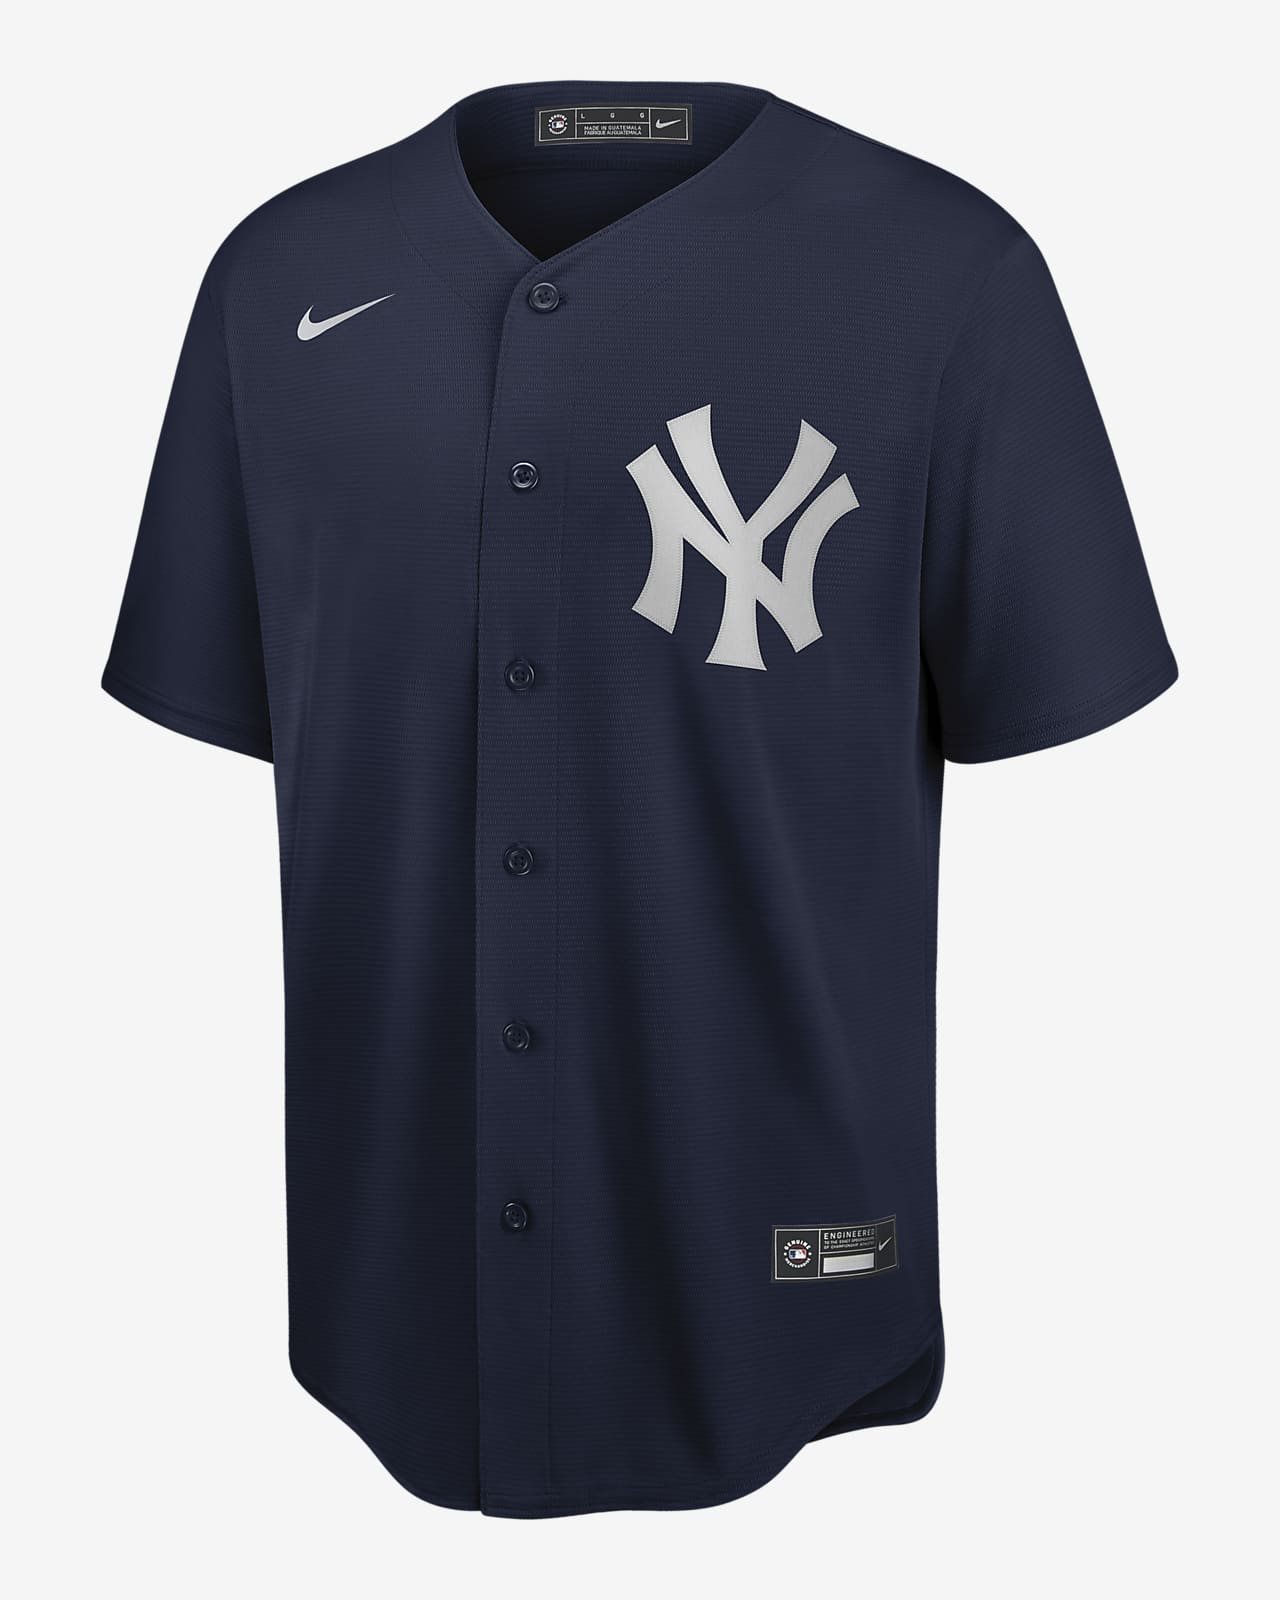 ny yankees baseball jersey